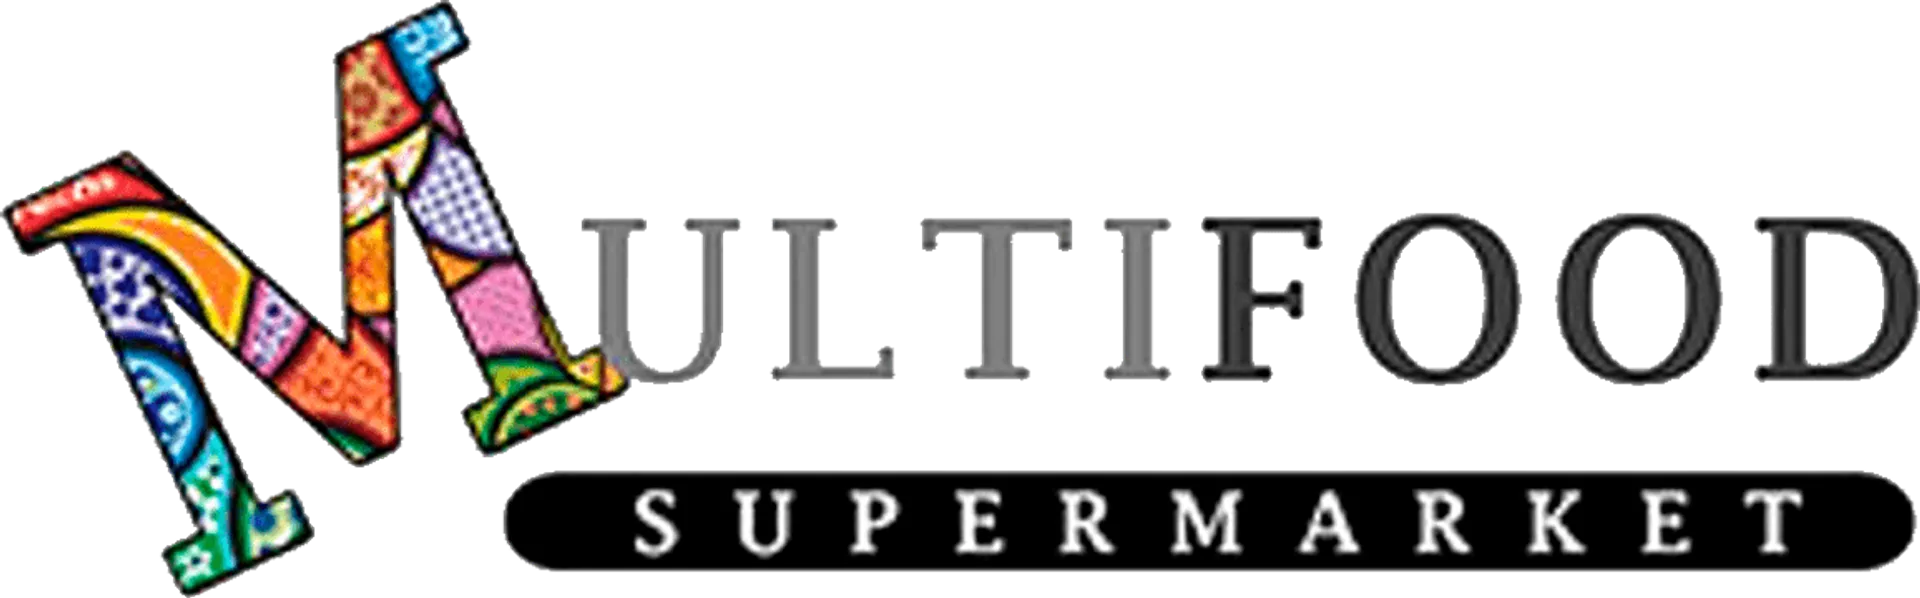 MULTIFOOD SUPERMARKET logo